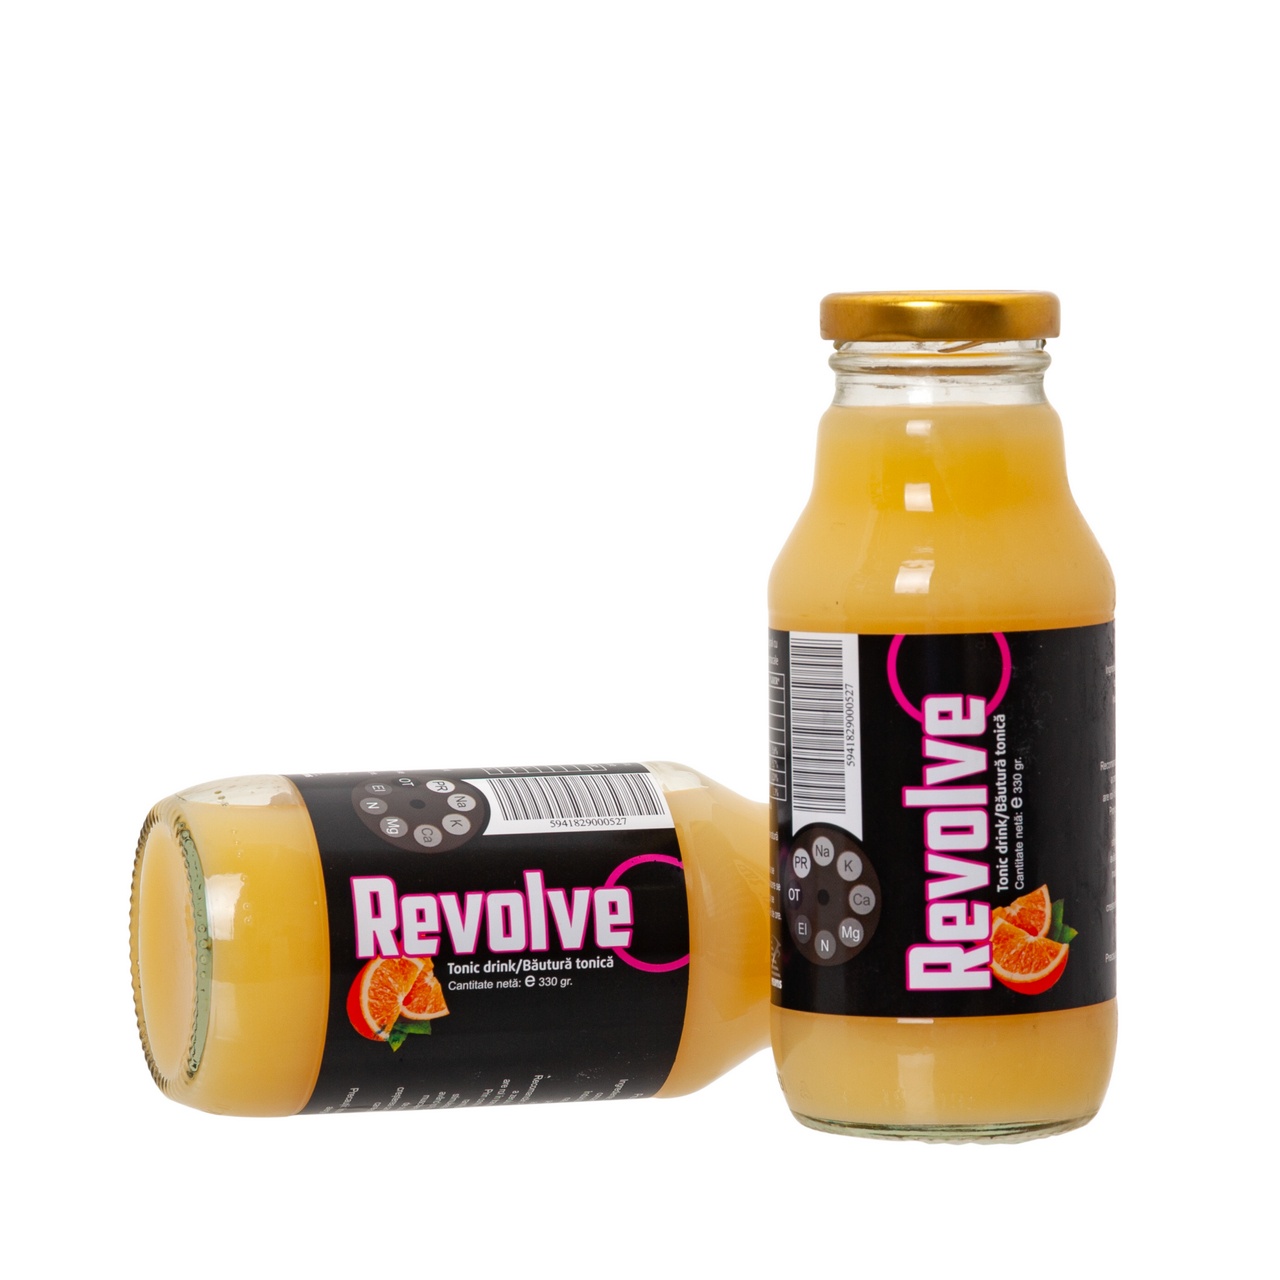 Băutură tonică Revolve® cu portocale, 330 ml